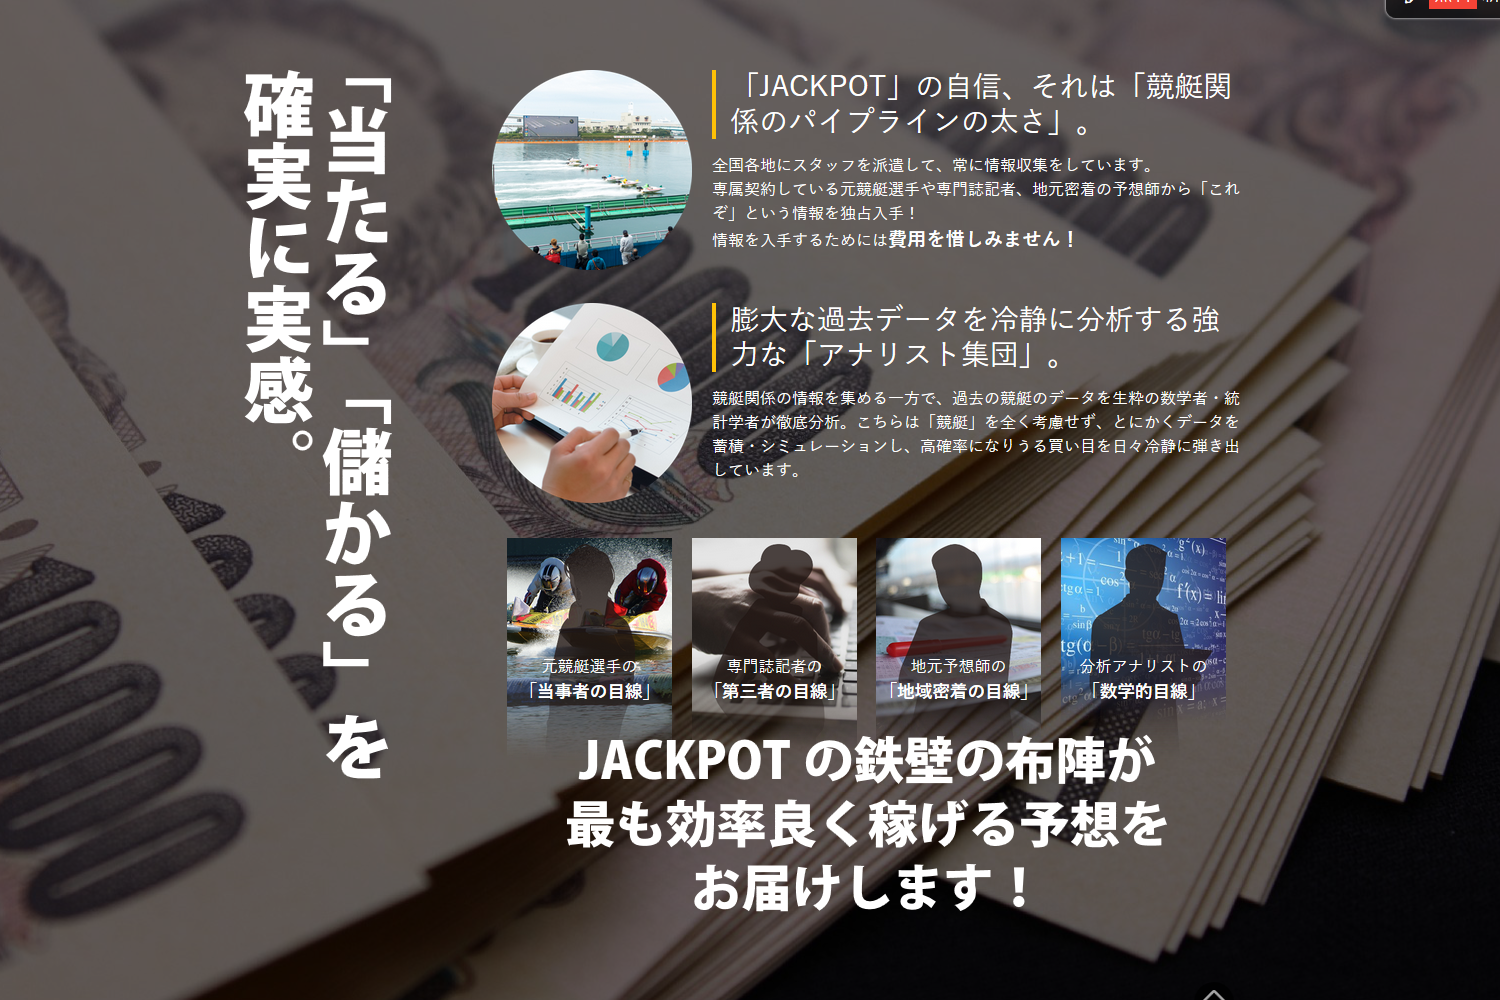 悪徳 JACKPOT(ジャックポット) 競艇予想サイトの口コミ検証や無料情報の予想結果も公開中 「当たる」「儲かる」を確実に実感。